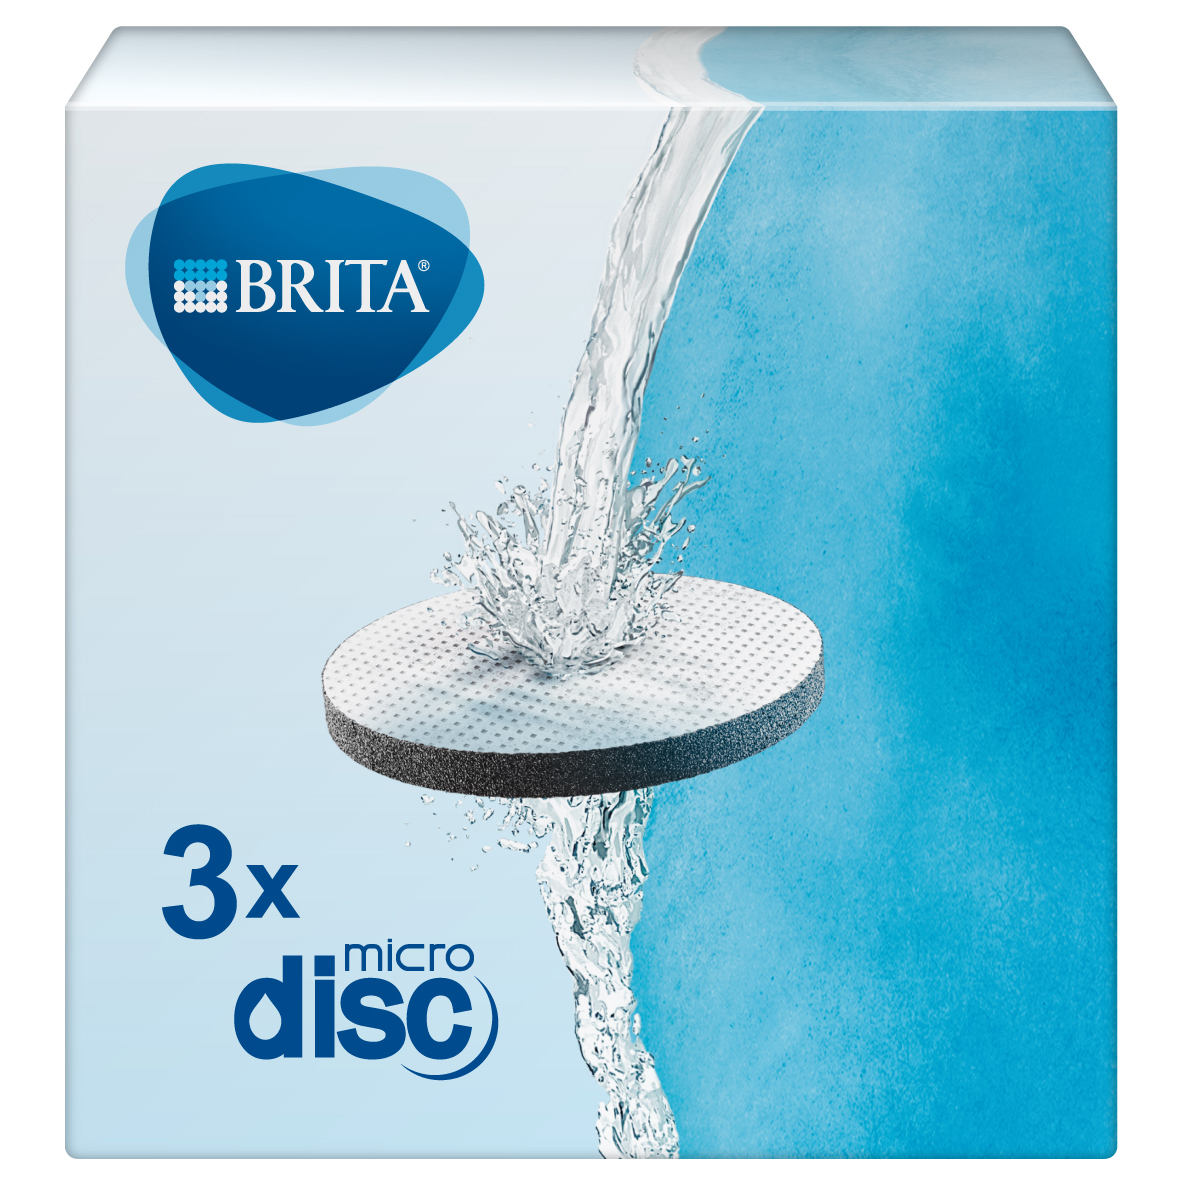 BRITA Micro riempimento del disco e passare ad alte prestazioni filtro acqua Dischi Confezione da 3 